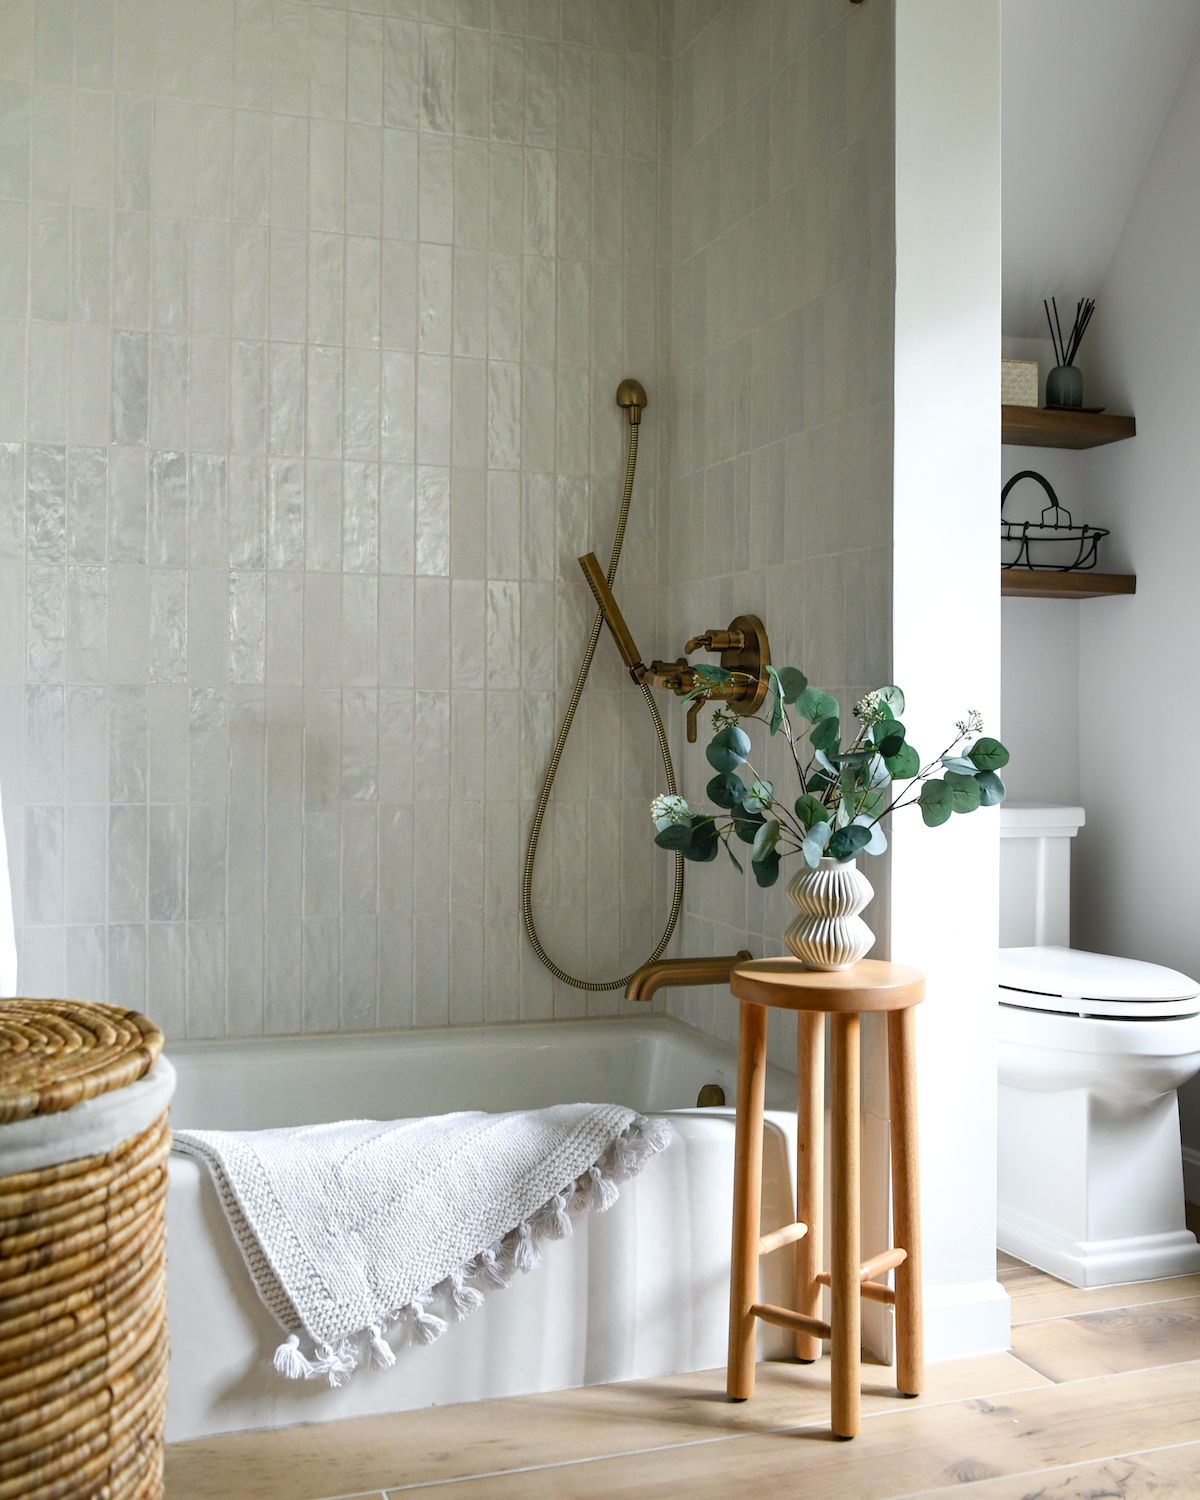 匹兹堡设计师阿曼达·博奇的浴室重新设计打造出了类似水疗的体验